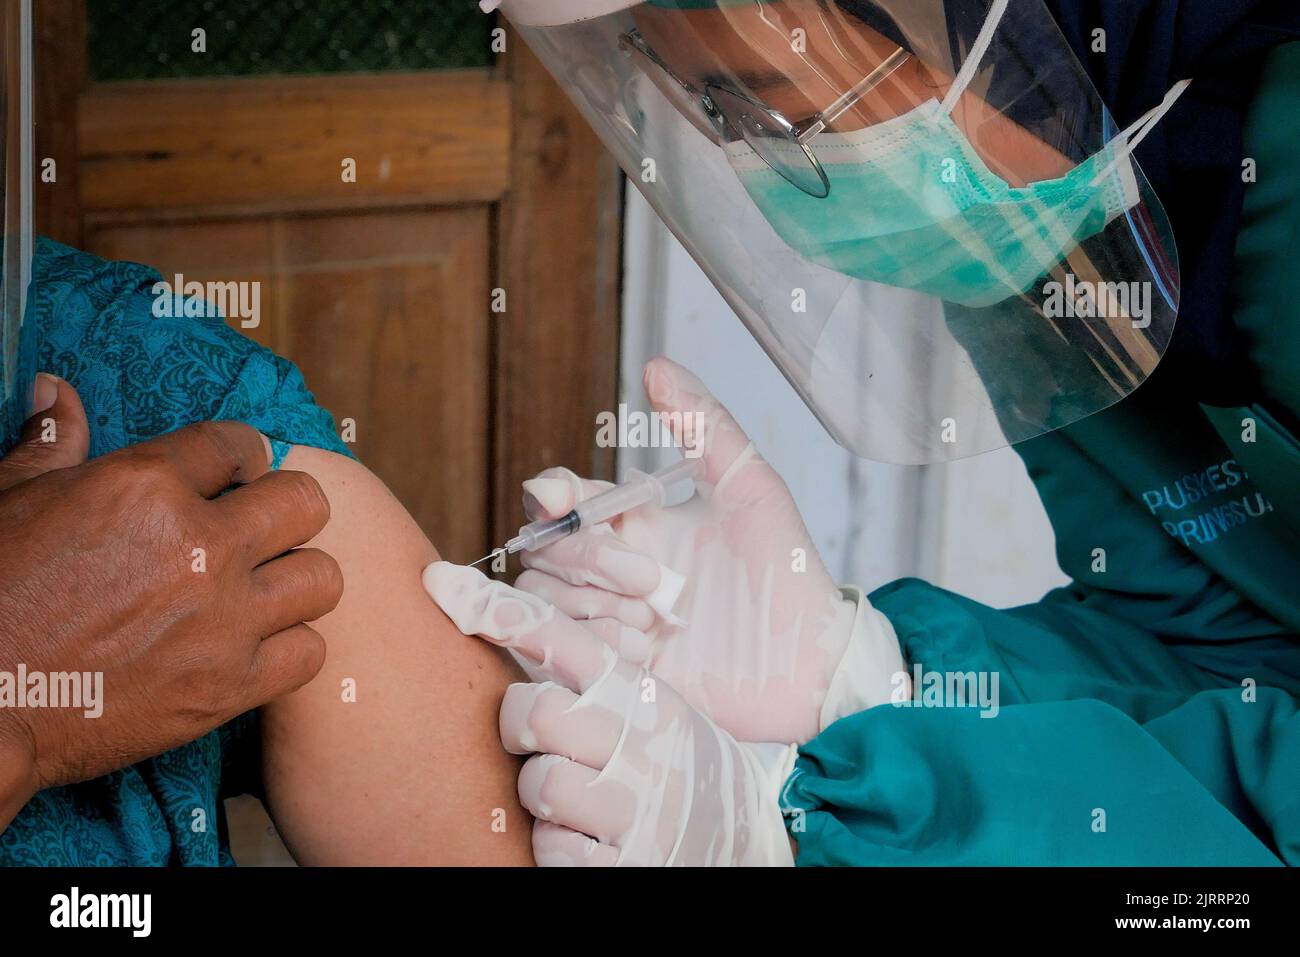 Temanggung, Giava Centrale, Indonesia, 23 settembre 2021: Gli operatori medici preparano iniezioni del vaccino Covid-19. Con questo metodo, la partecipazione alle vaccinazioni dovrebbe aumentare perché può raggiungere le famiglie che non hanno accesso e hanno paura di lasciare la casa per evitare di trasmettere il virus. Foto Stock